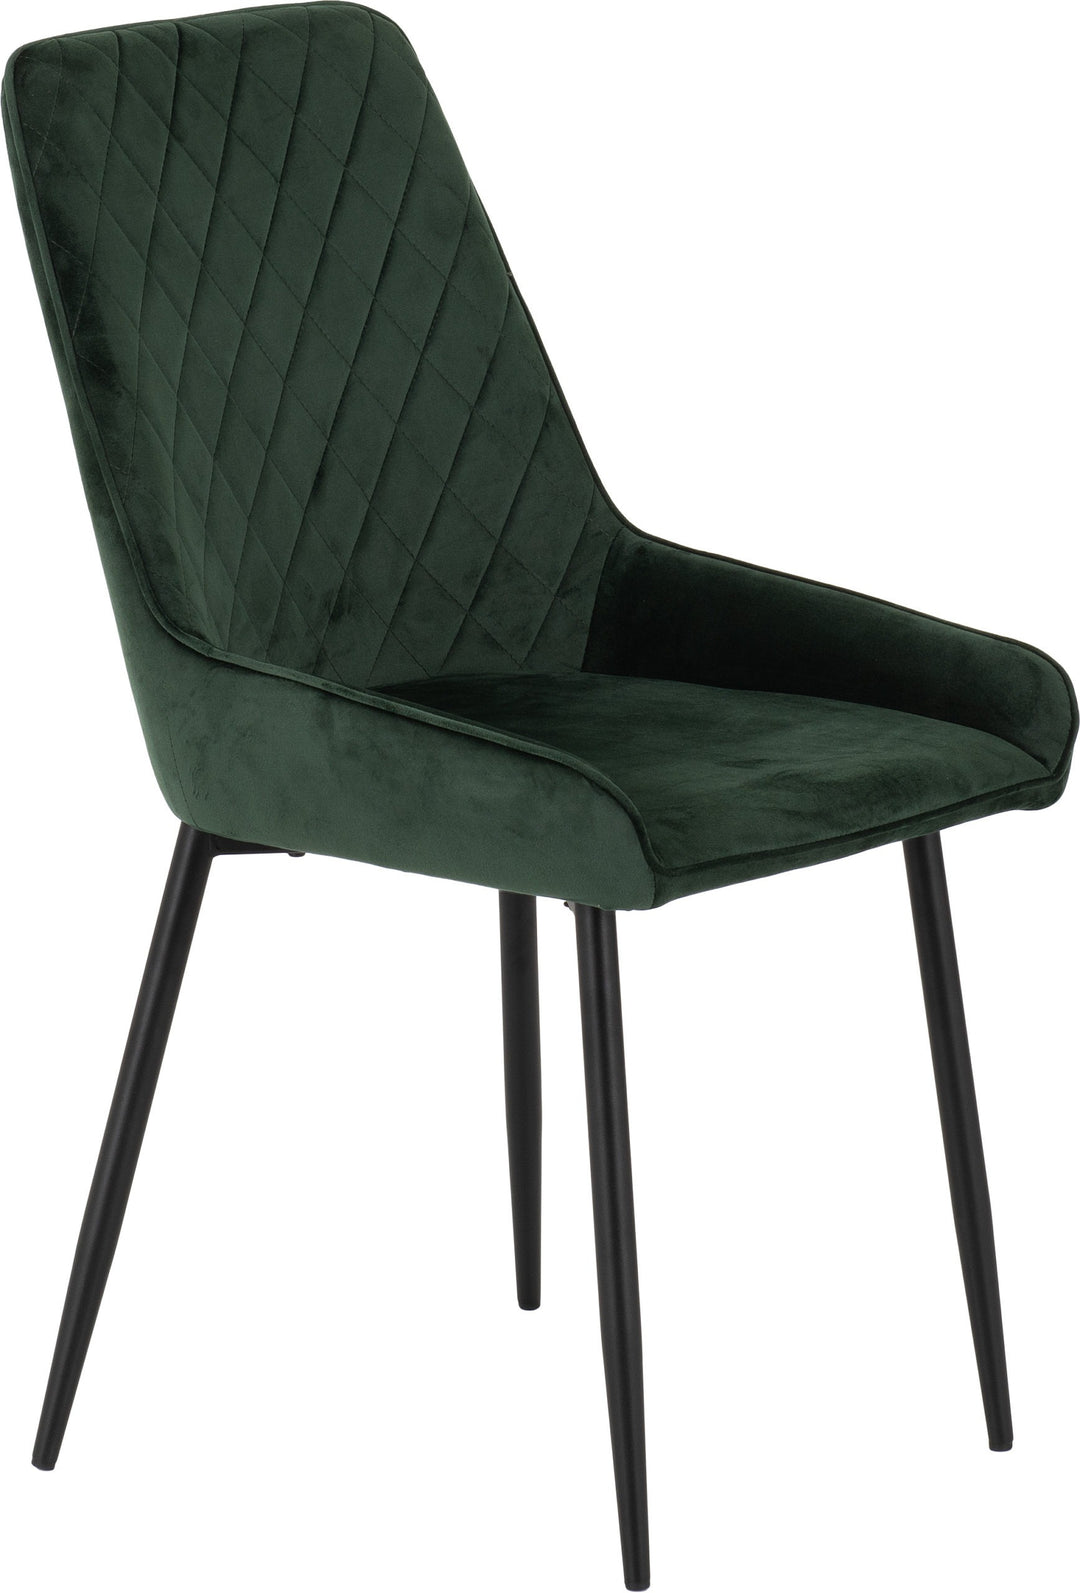 Treviso & Avery Dining Set (X4 Chairs) - Light Oak Effect/Emerald Green Velvet